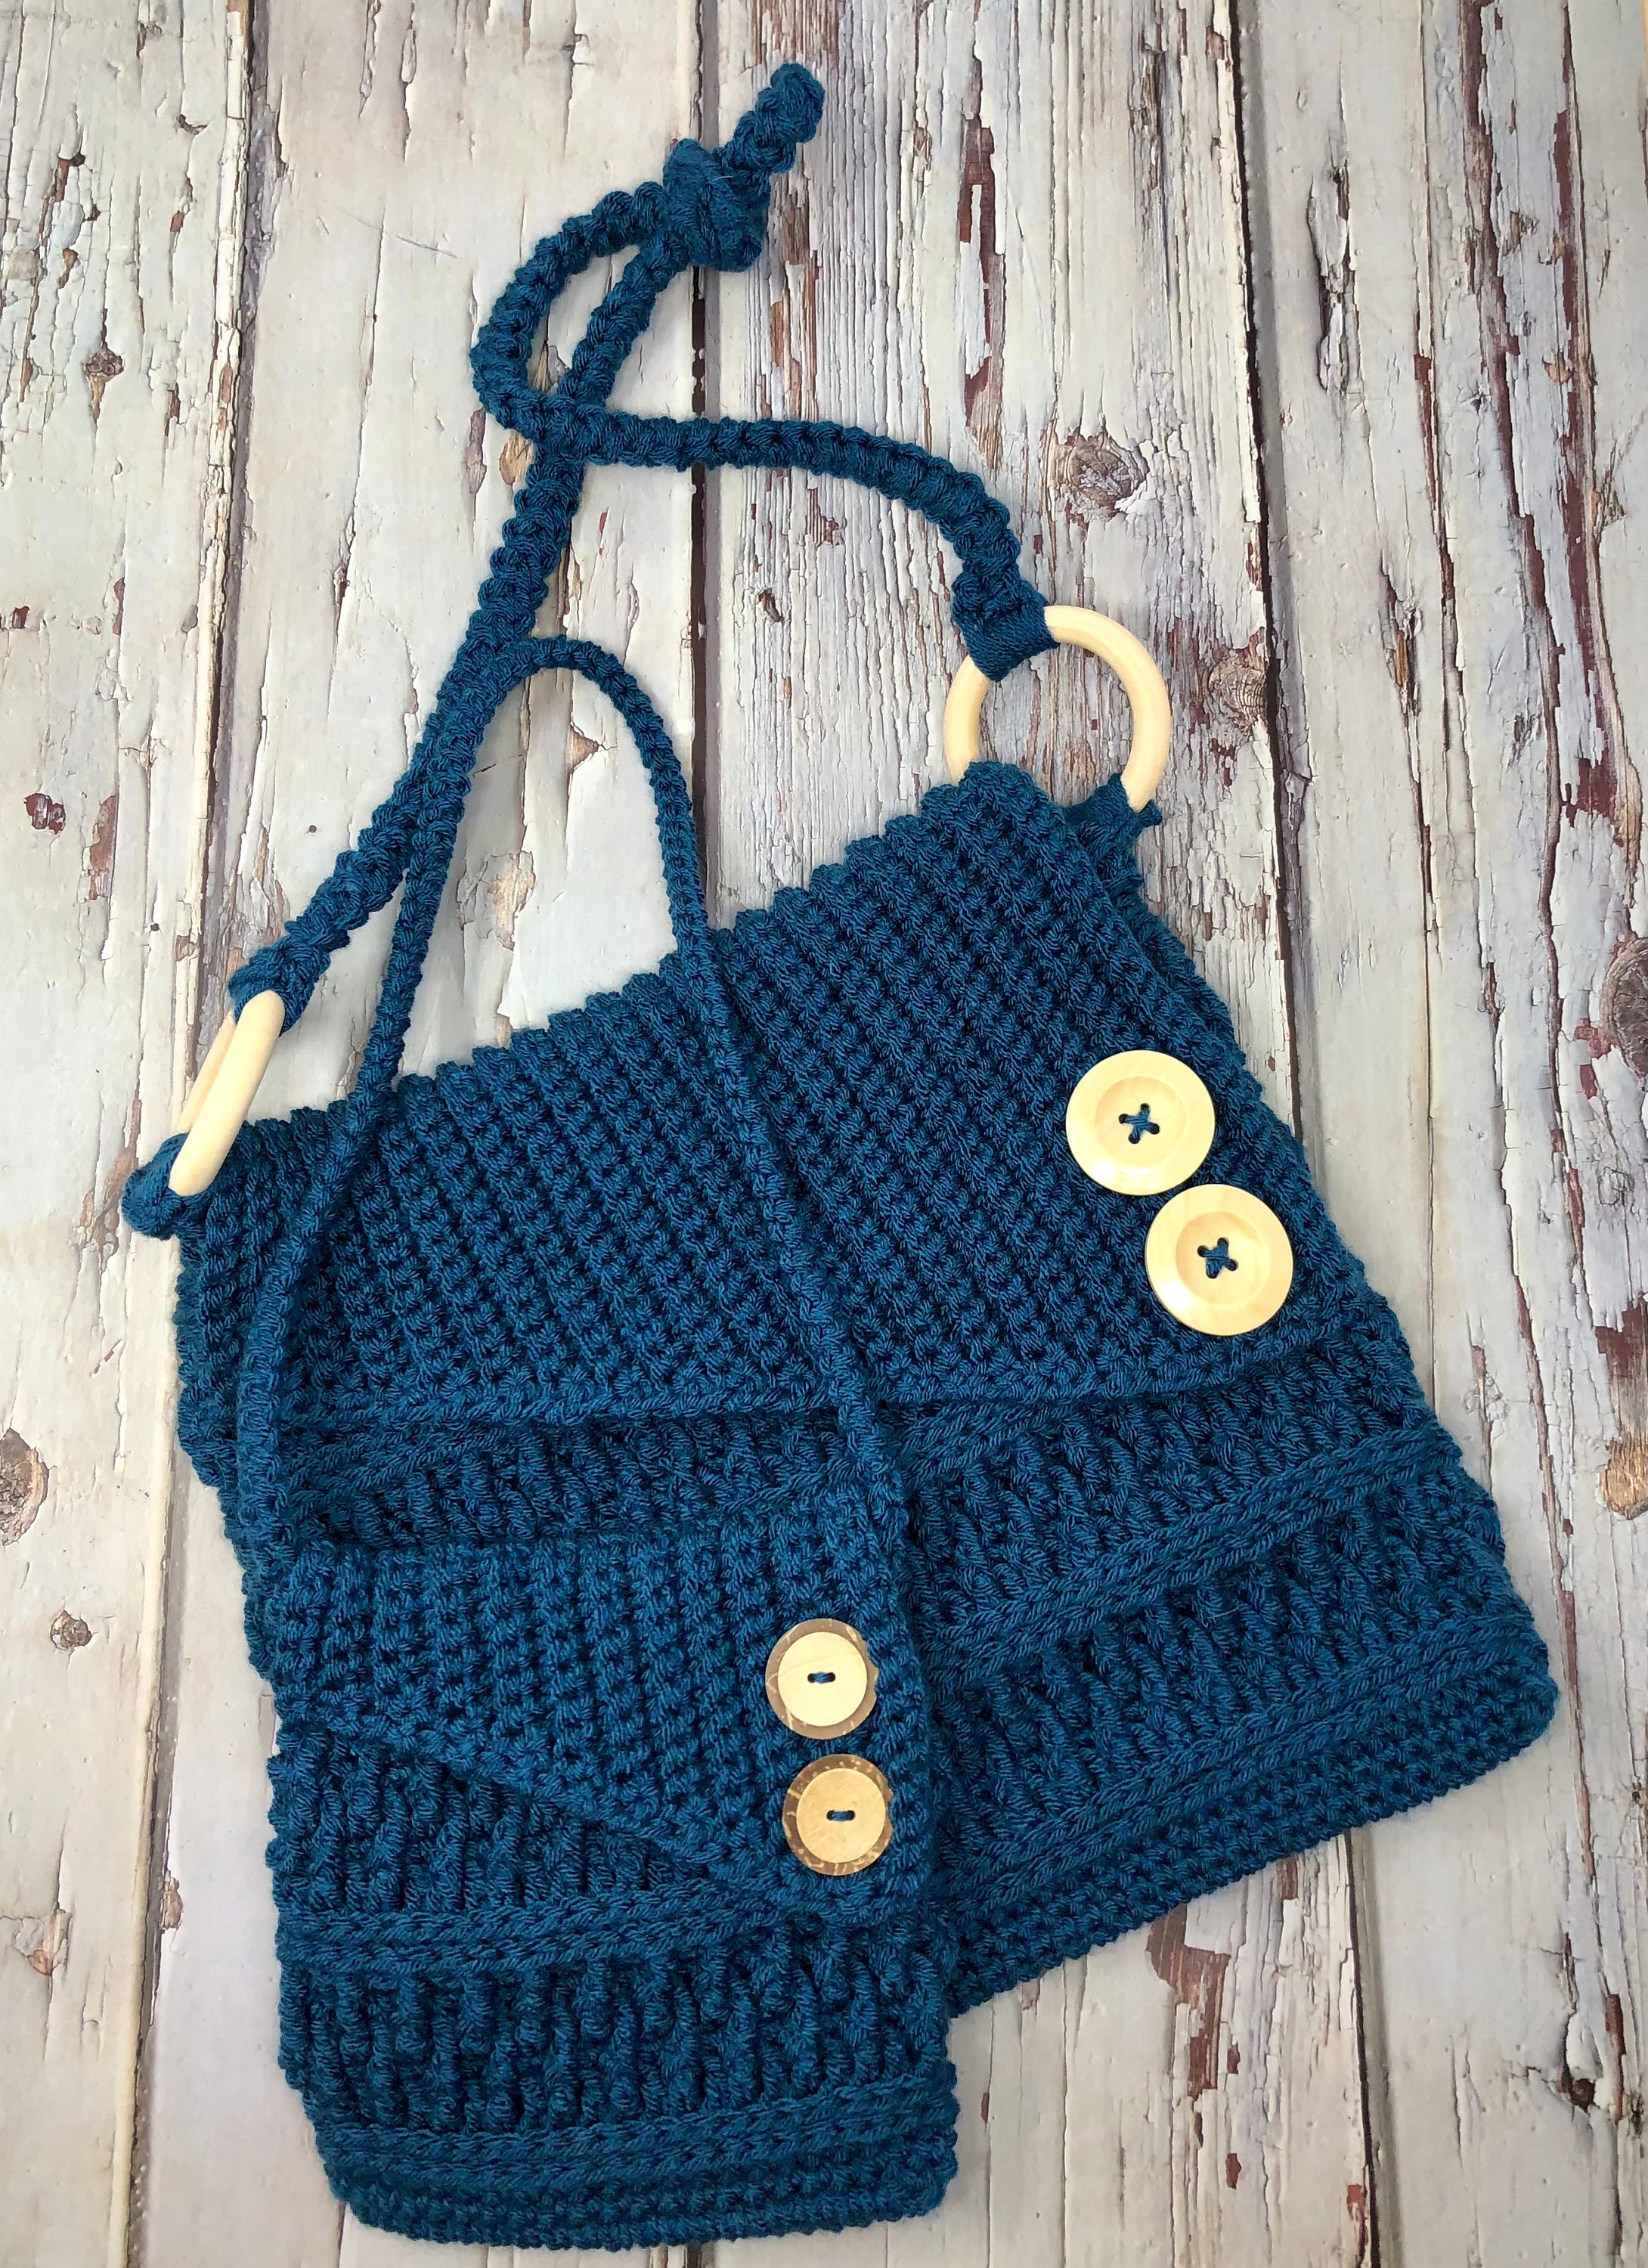 Turnberry Cross Body Bag, Crochet Purse, PDF Crochet Pattern